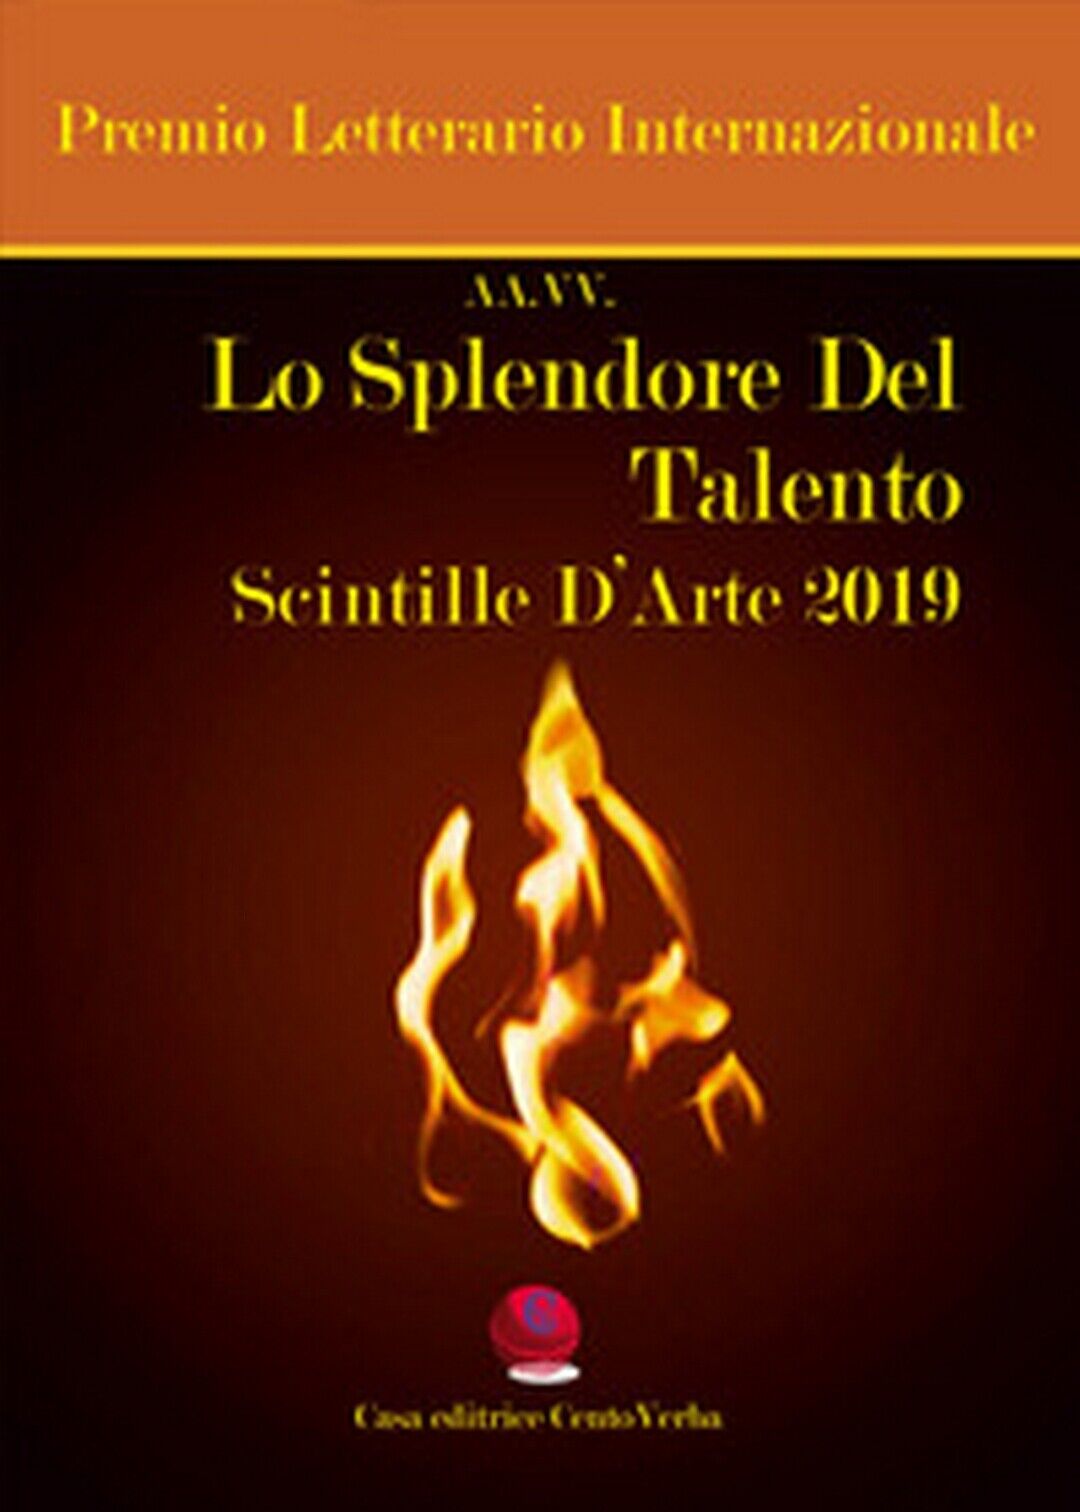 Lo splendore del talento. Scintille d'arte 2019. Premio Letterario Internazional